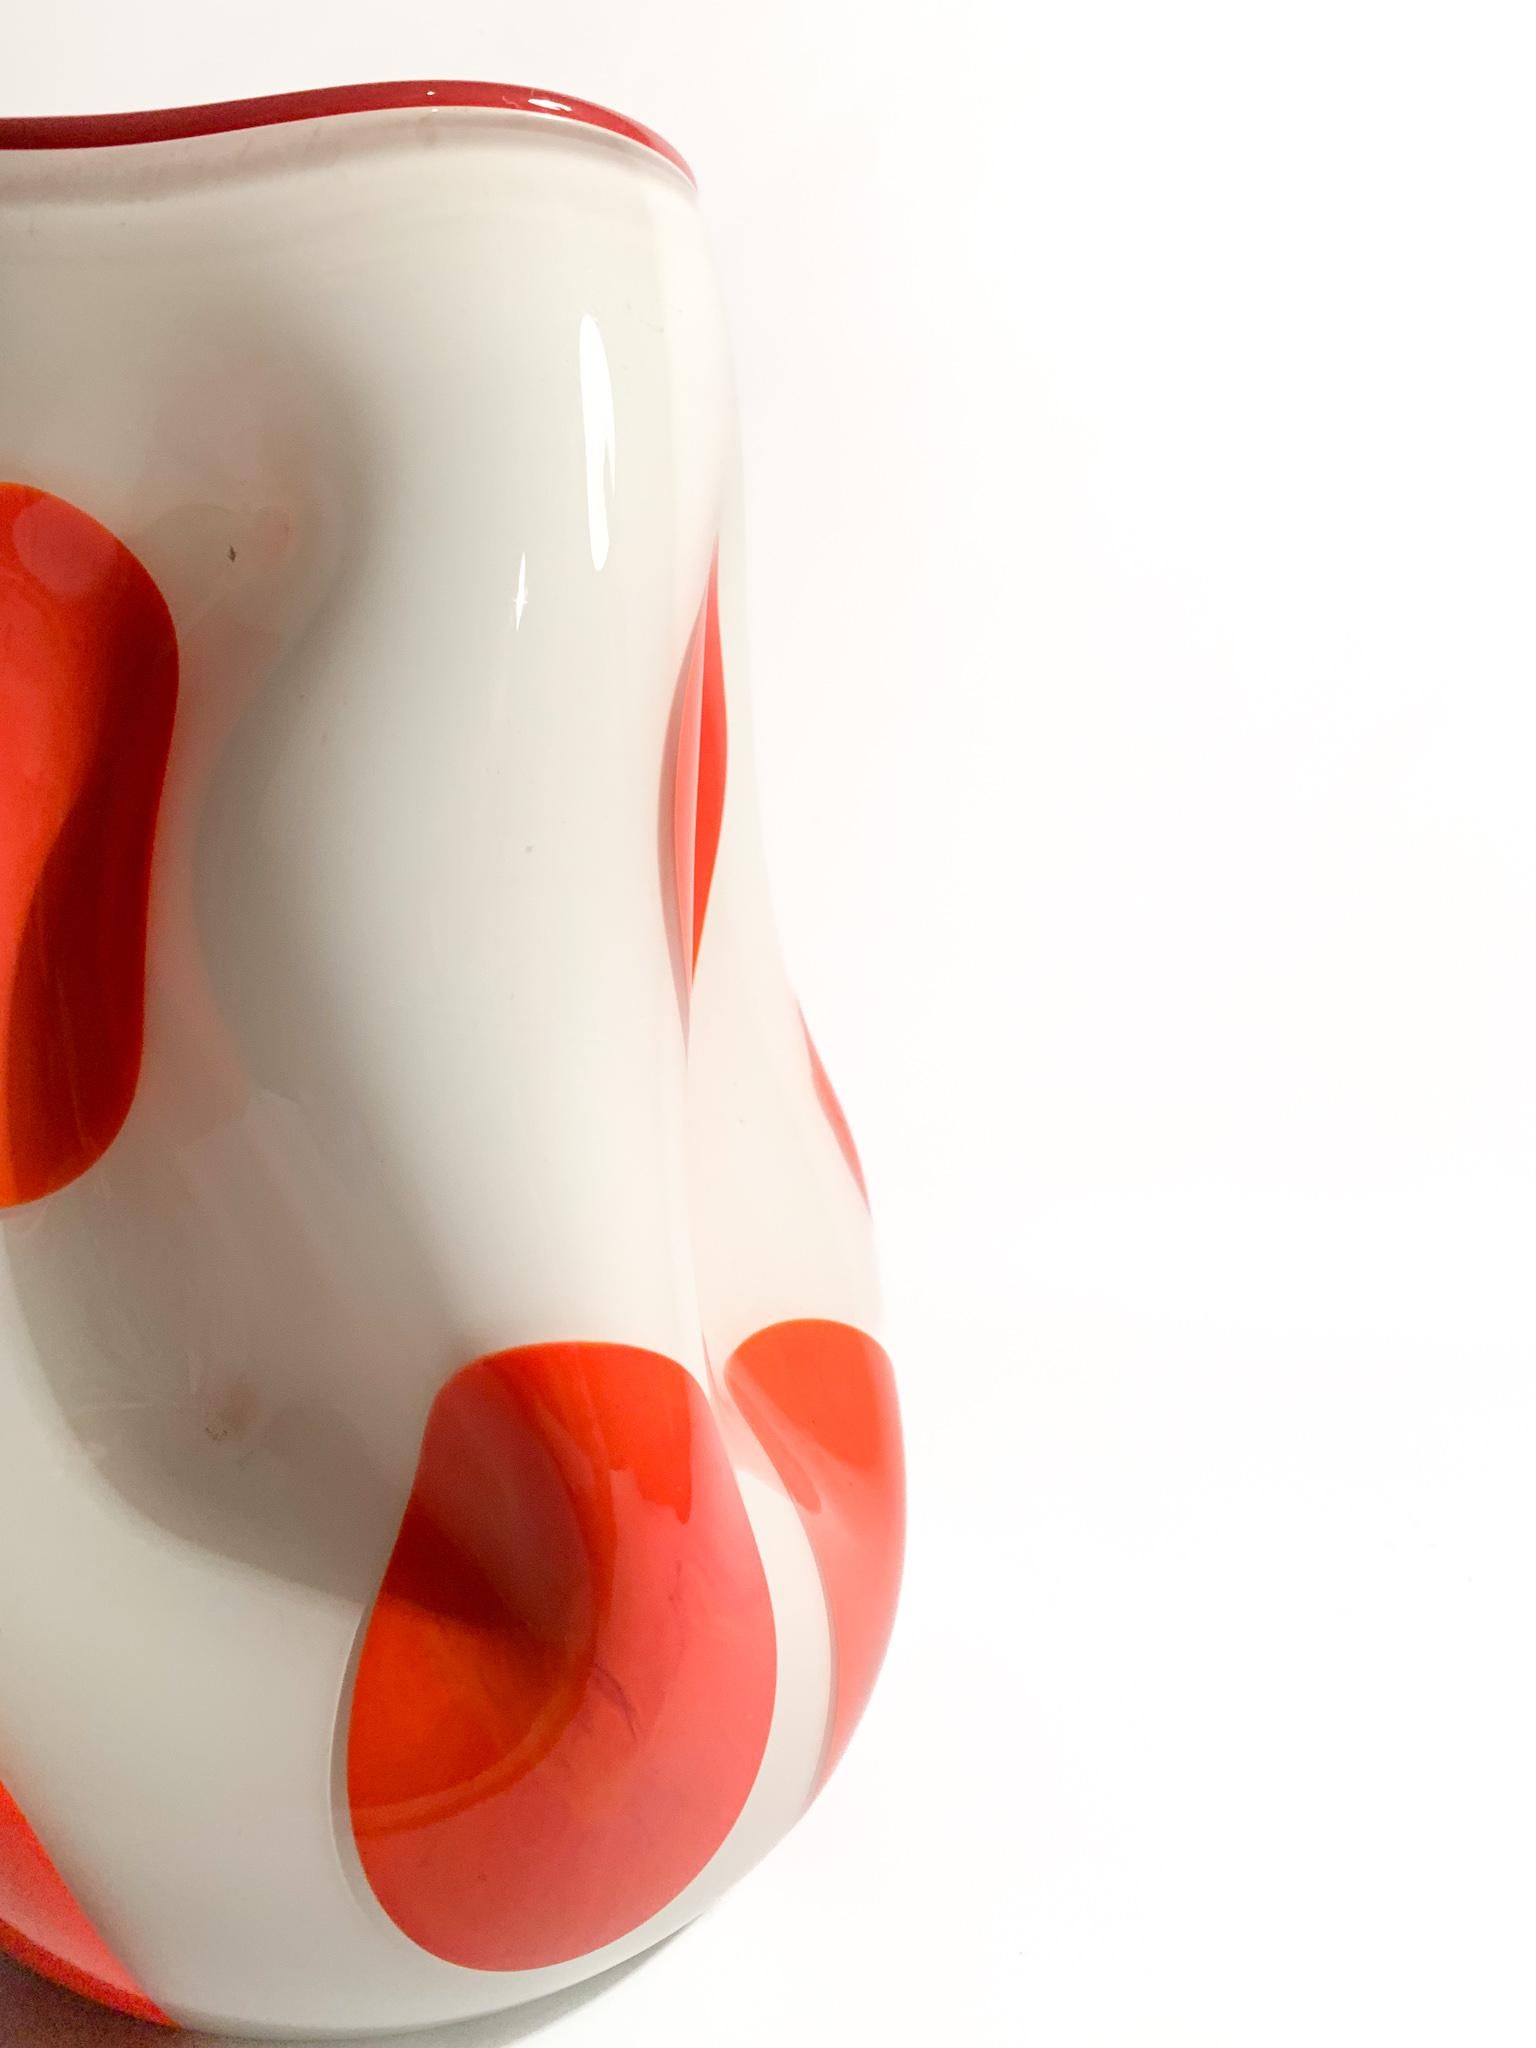 Italian White and Orange Murano Glass Vase from the 1980s